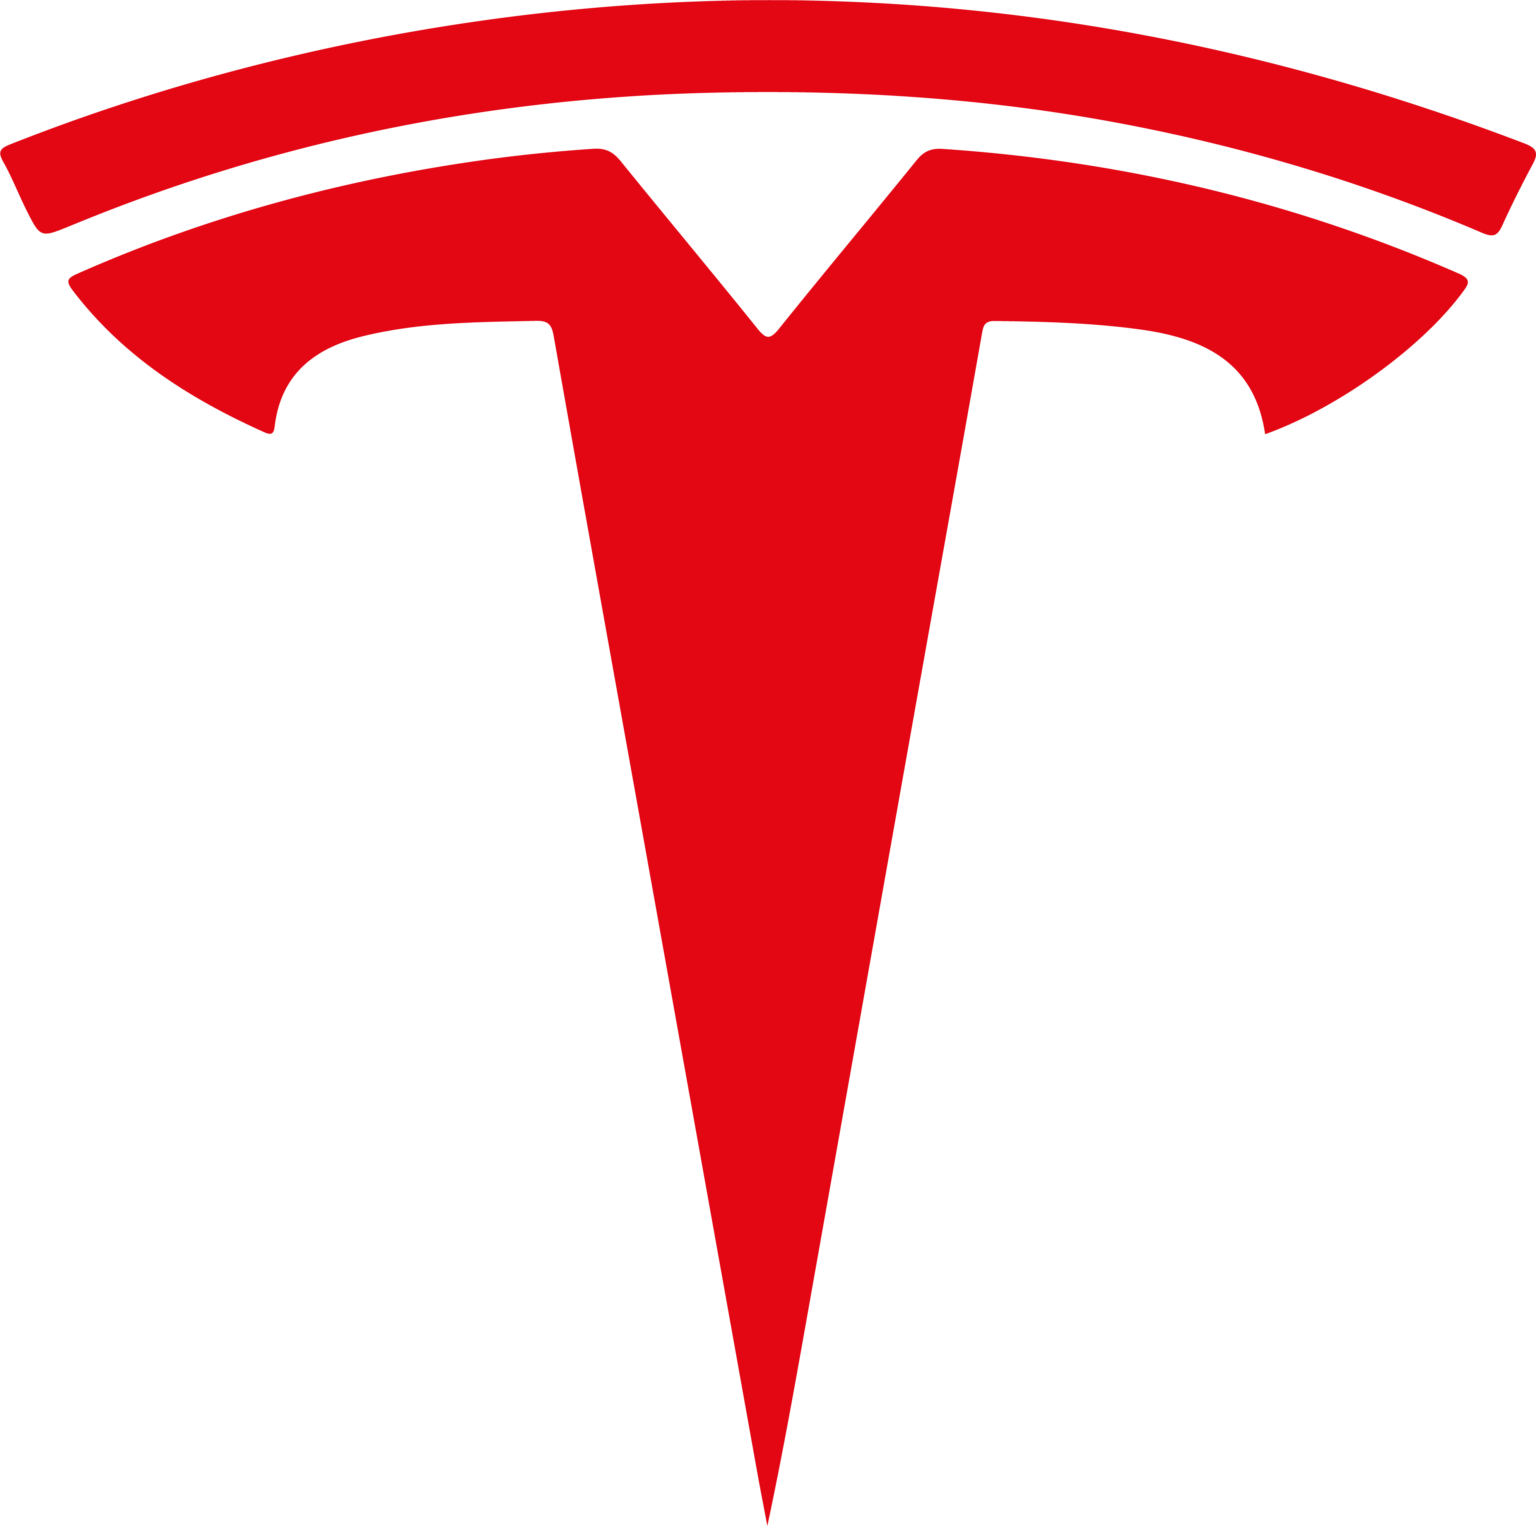 Tesla Logo PNG Image